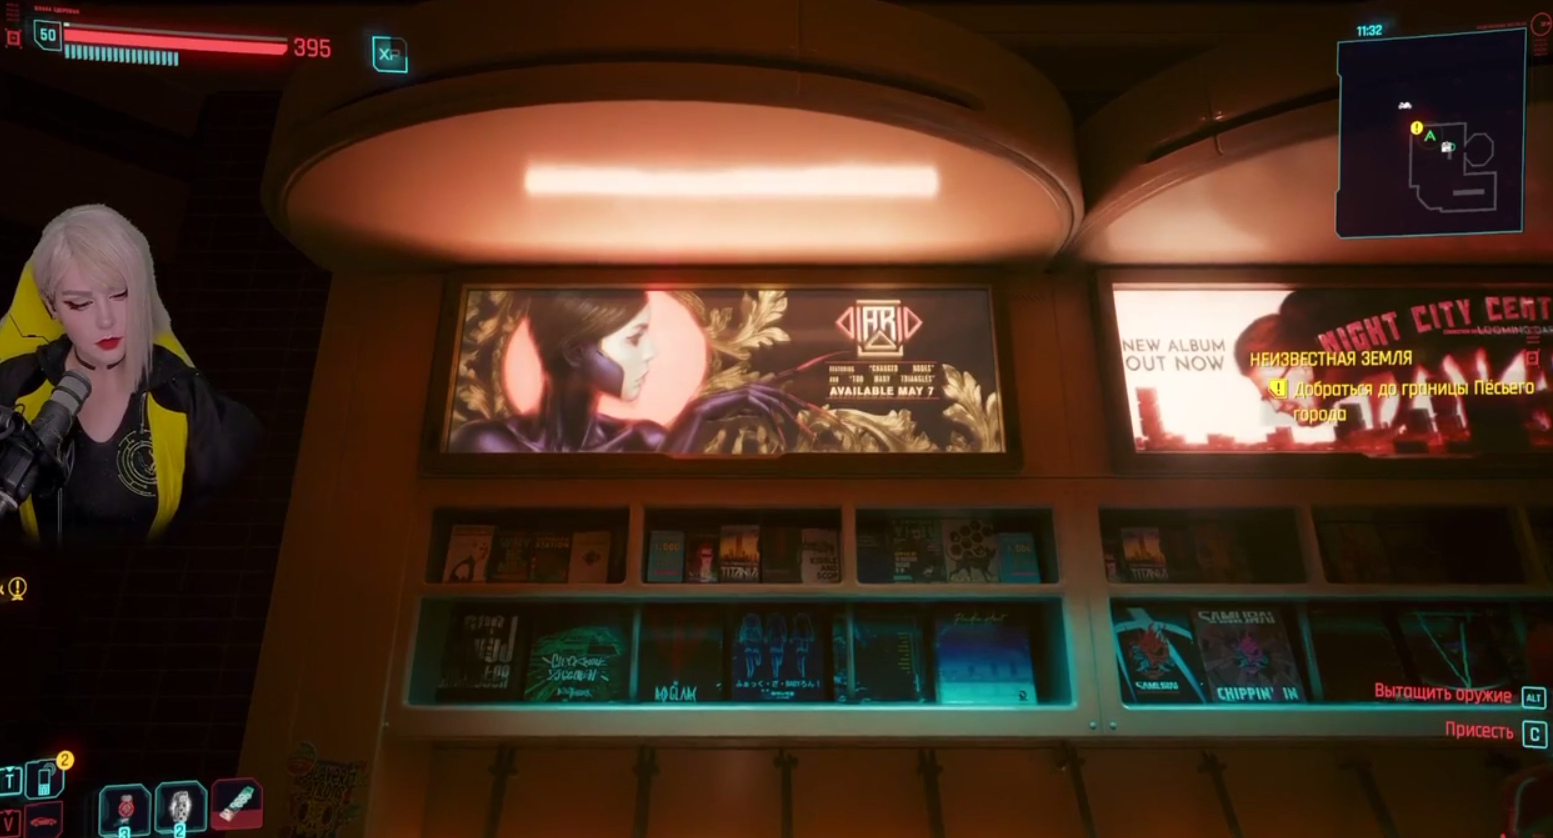 Изображения стримерши Алины Рин остались в Cyberpunk 2077 после выхода DLC